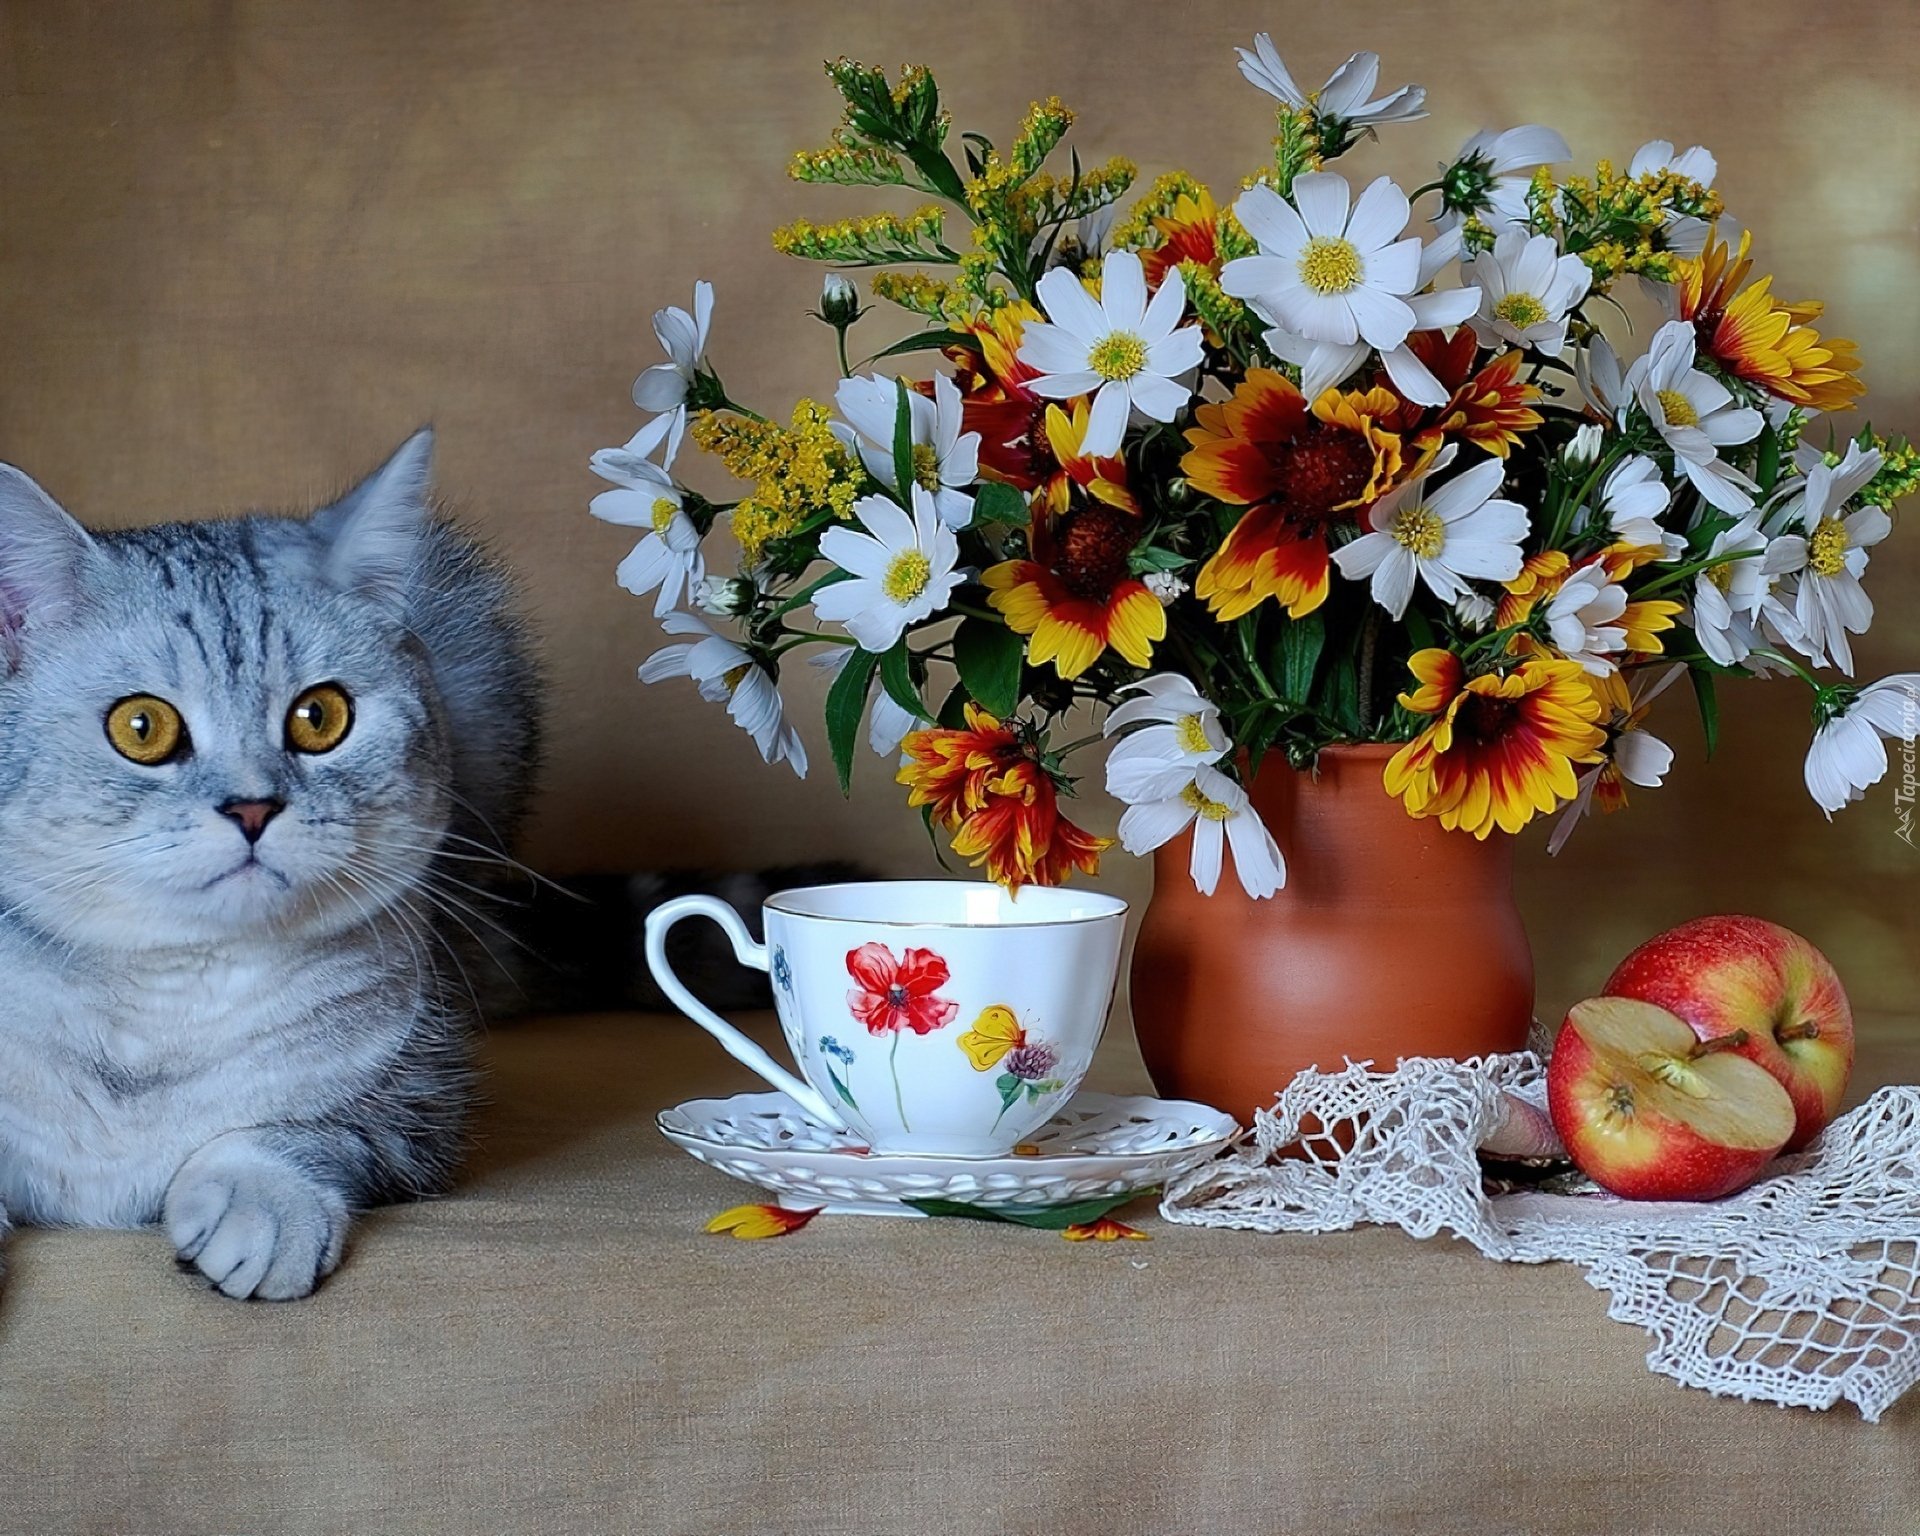 Картинки с добрым утром весенние с котами. Доброе утро котики. Открытки с добрым утром с котятами. Котик с цветами. С добрым весенним утром с котиками.